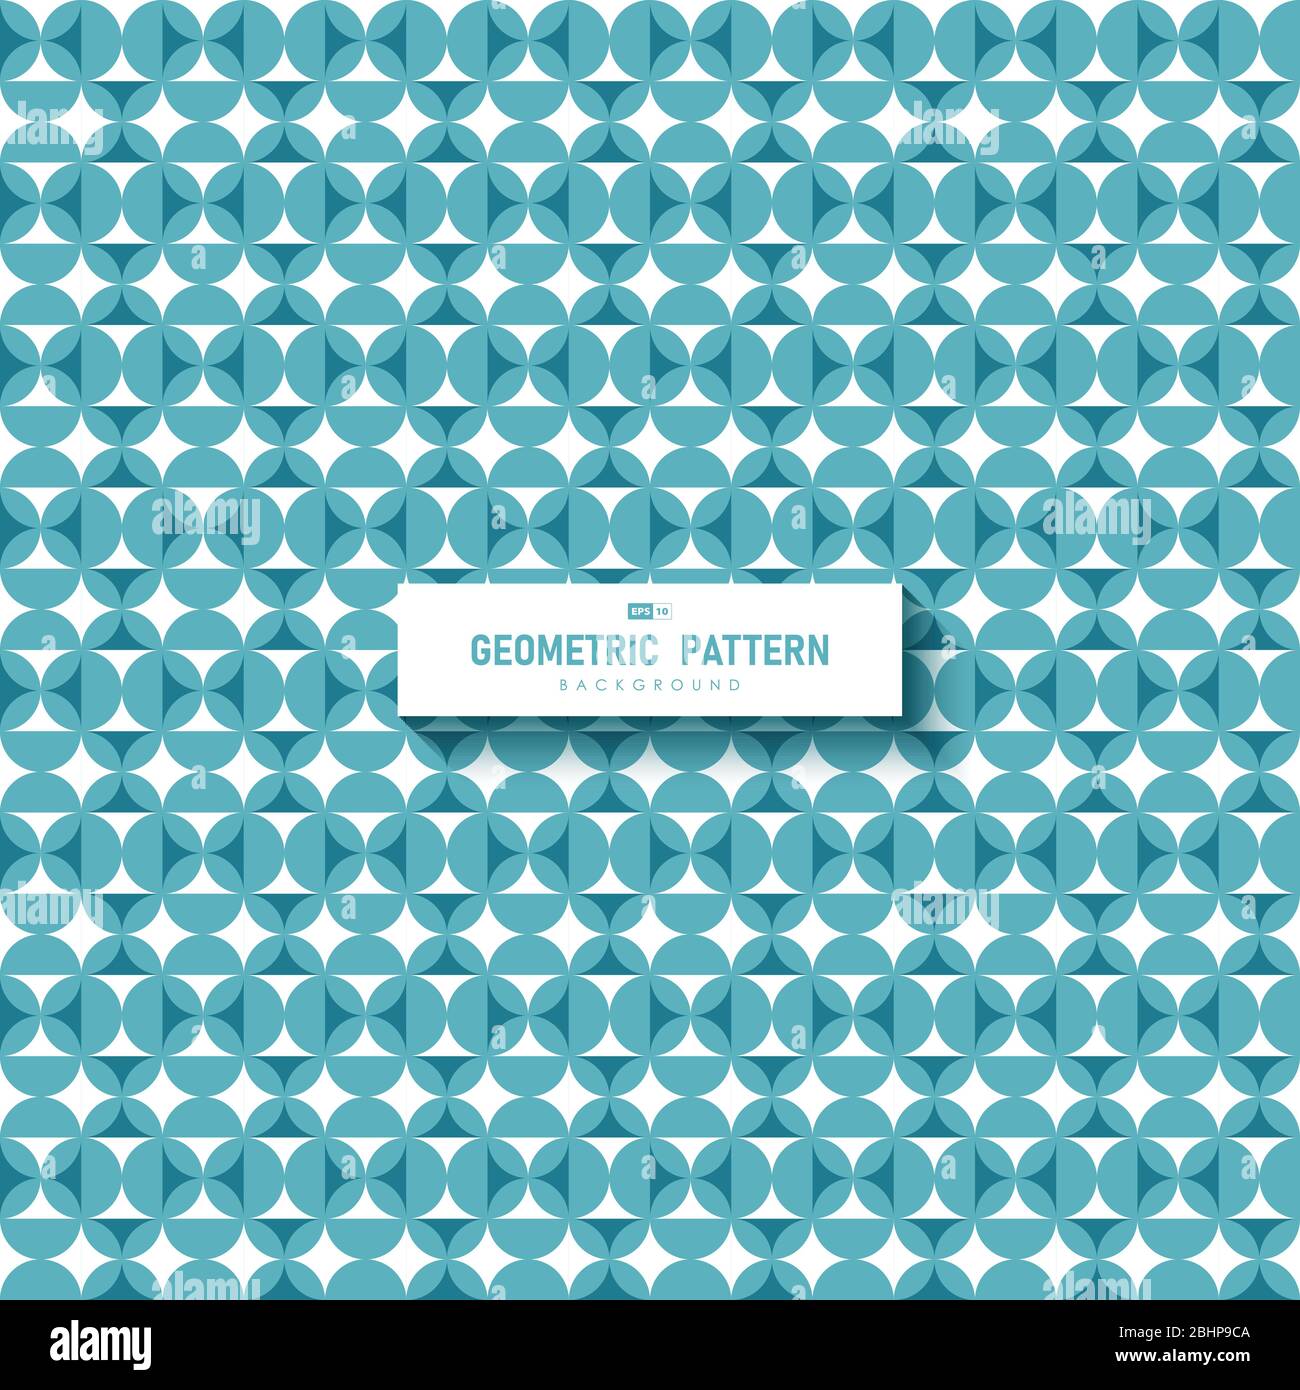 Abstrakt geometrische blau von minimalen Kreis Muster Design Kunstwerk Hintergrund. Verwenden Sie für Anzeige, Poster, Bildmaterial, Vorlagendesign, Druck. Illustration Vektor Stock Vektor